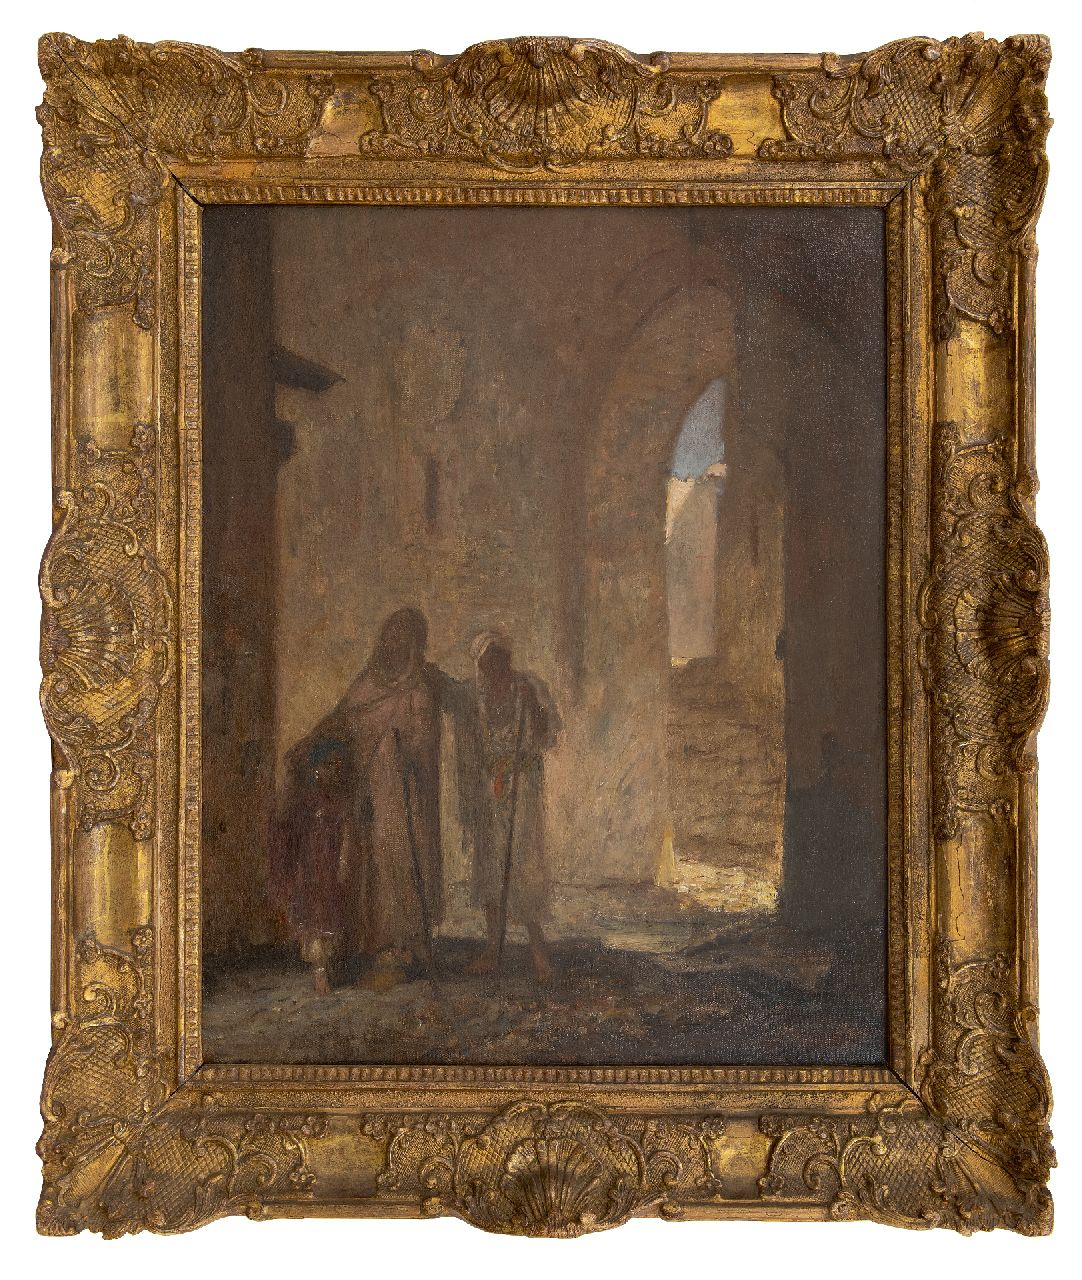 Bauer M.A.J.  | 'Marius' Alexander Jacques Bauer | Schilderijen te koop aangeboden | De blinde bedelaar, olieverf op doek 62,8 x 50,8 cm, gesigneerd rechtsonder